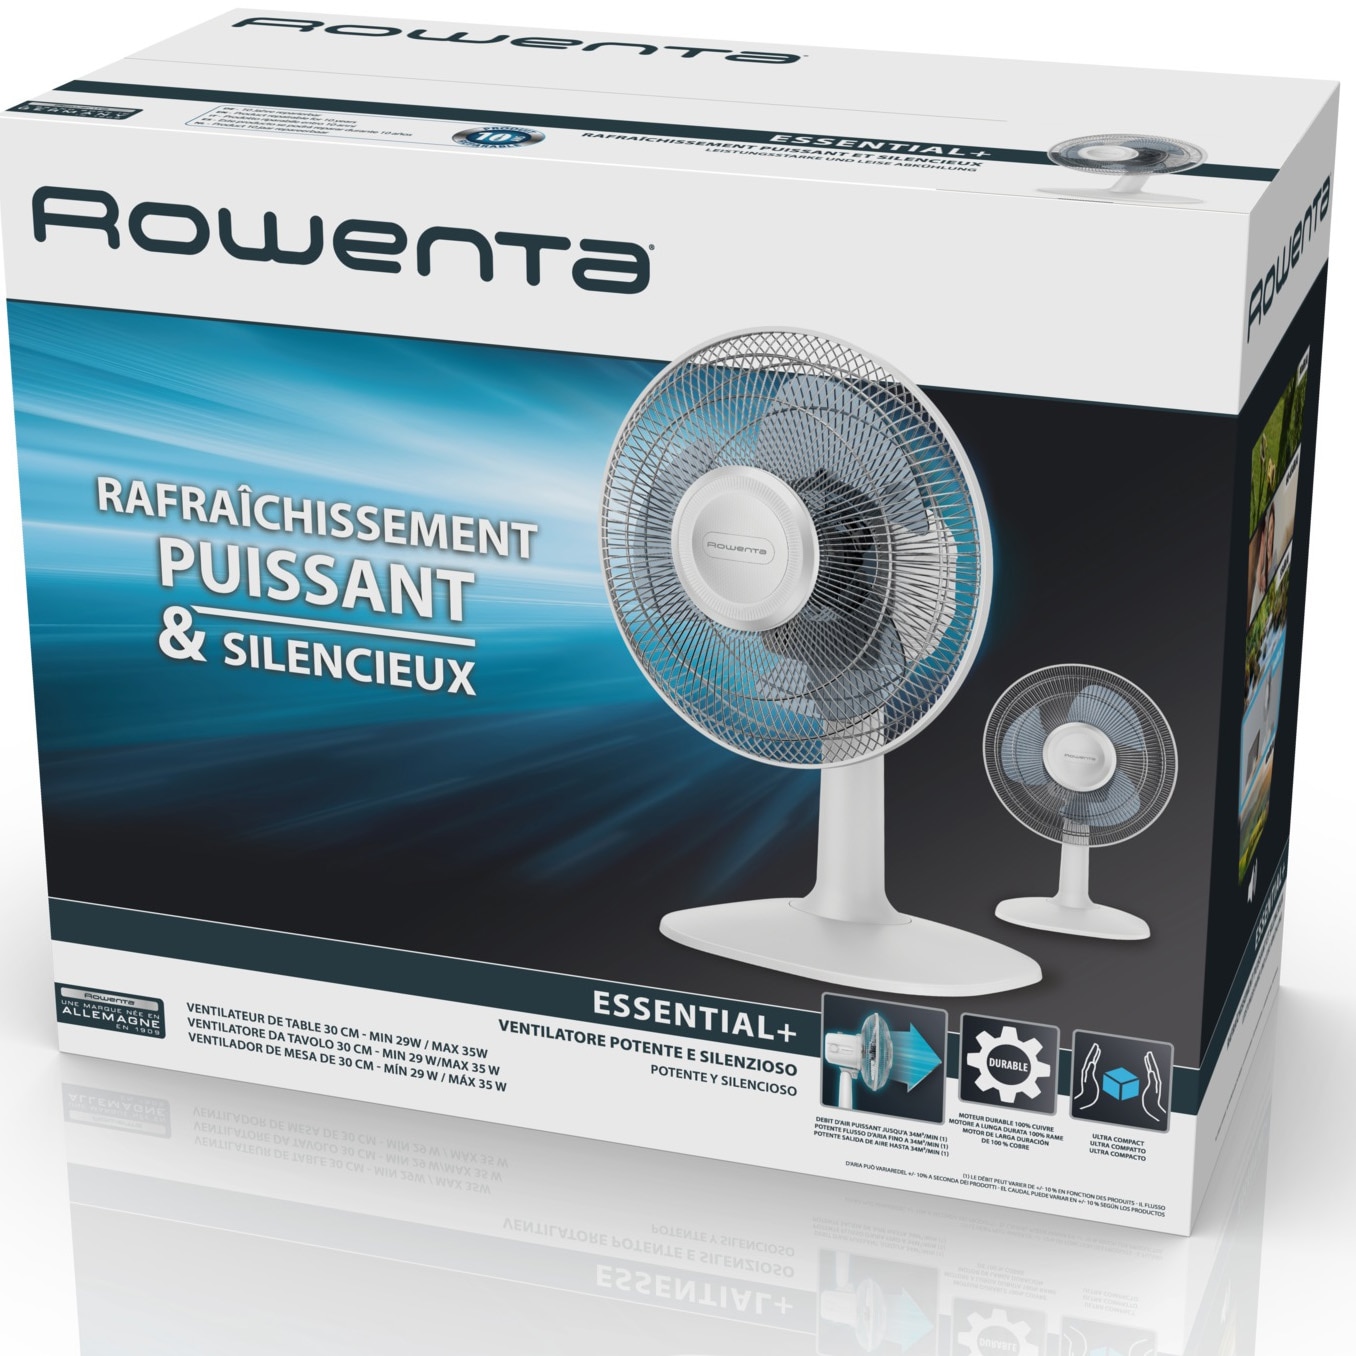 Rowenta Essential+ VU2330 Essential +, Ventilatore da Tavolo, 3 Velocità,  Silenziosità 46 dBA, Design compatto, Flusso d'aria mx 34 m3/min, Bianco, Ventilatori in Offerta su Stay On